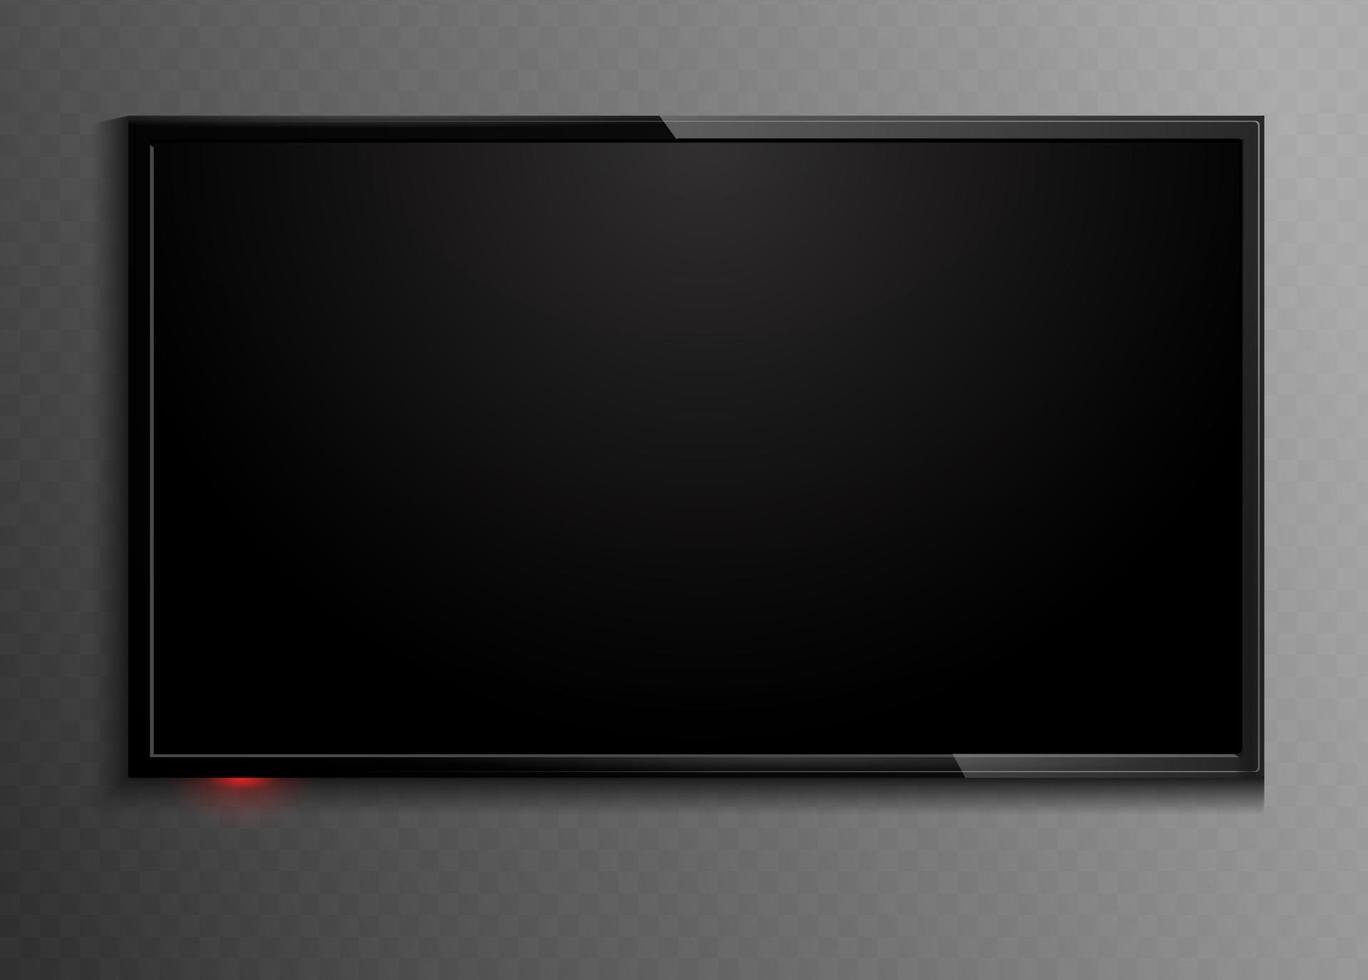 svart bildskärm det representerar underhållningskonceptet 3d tom ledd bildskärm display mockup vektorillustration vektor